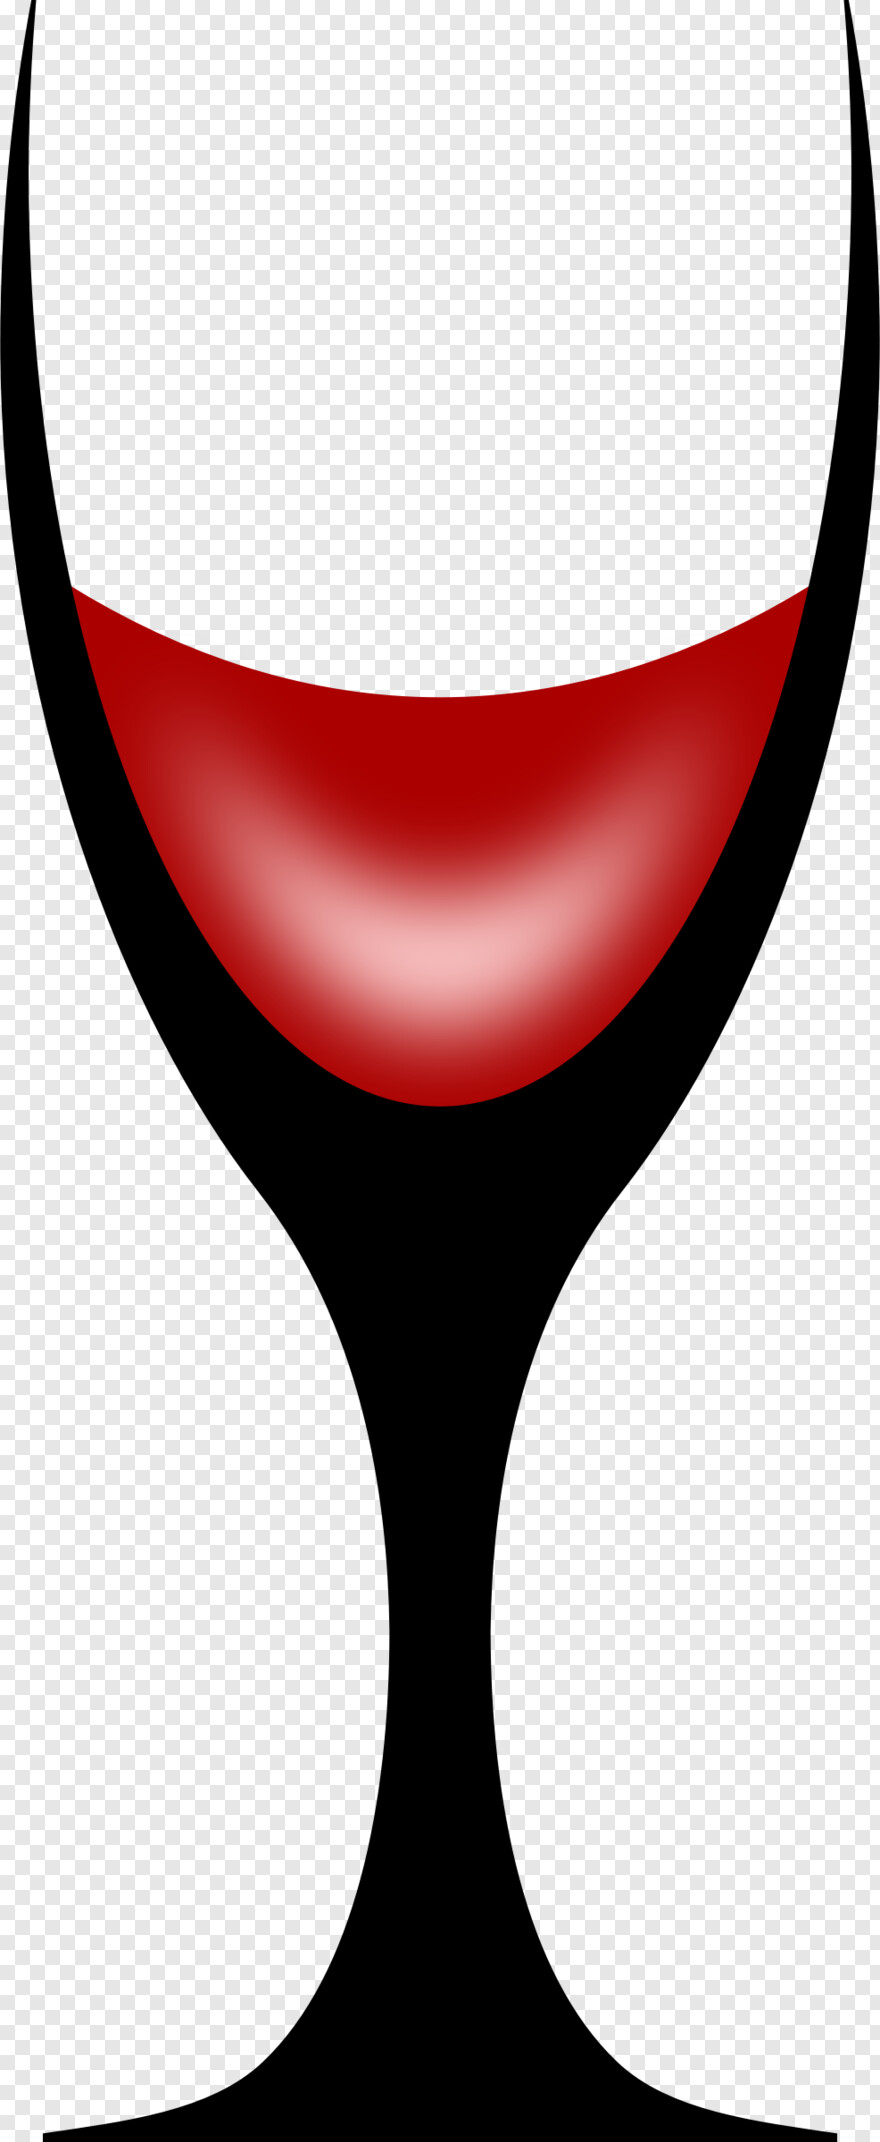 wine-glass # 366440